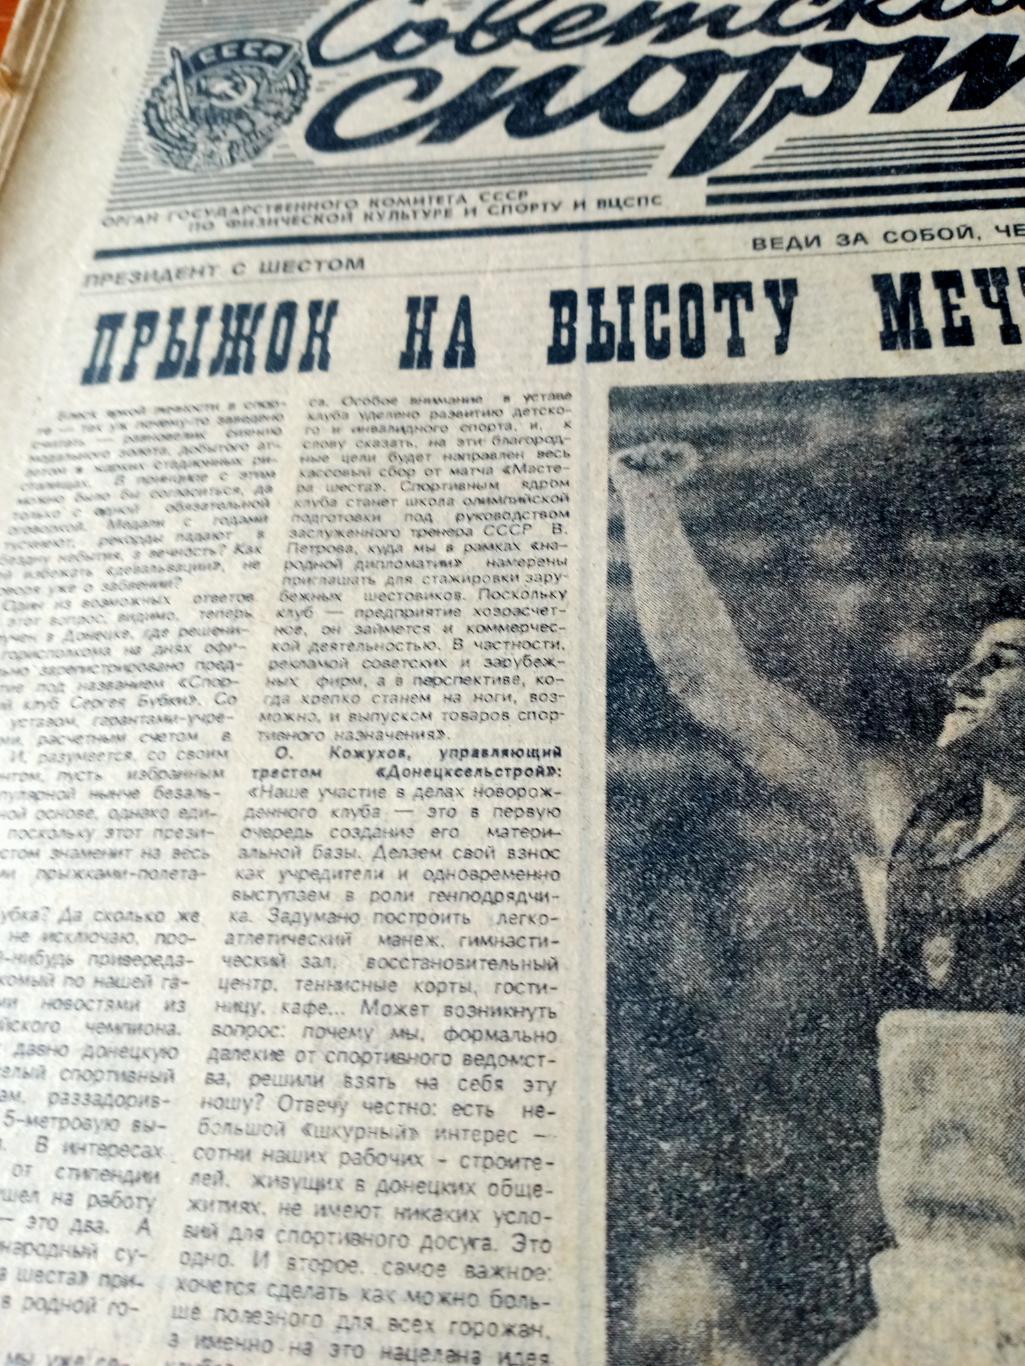 Еврокубки. Советский спорт. 1990 год. 11 марта